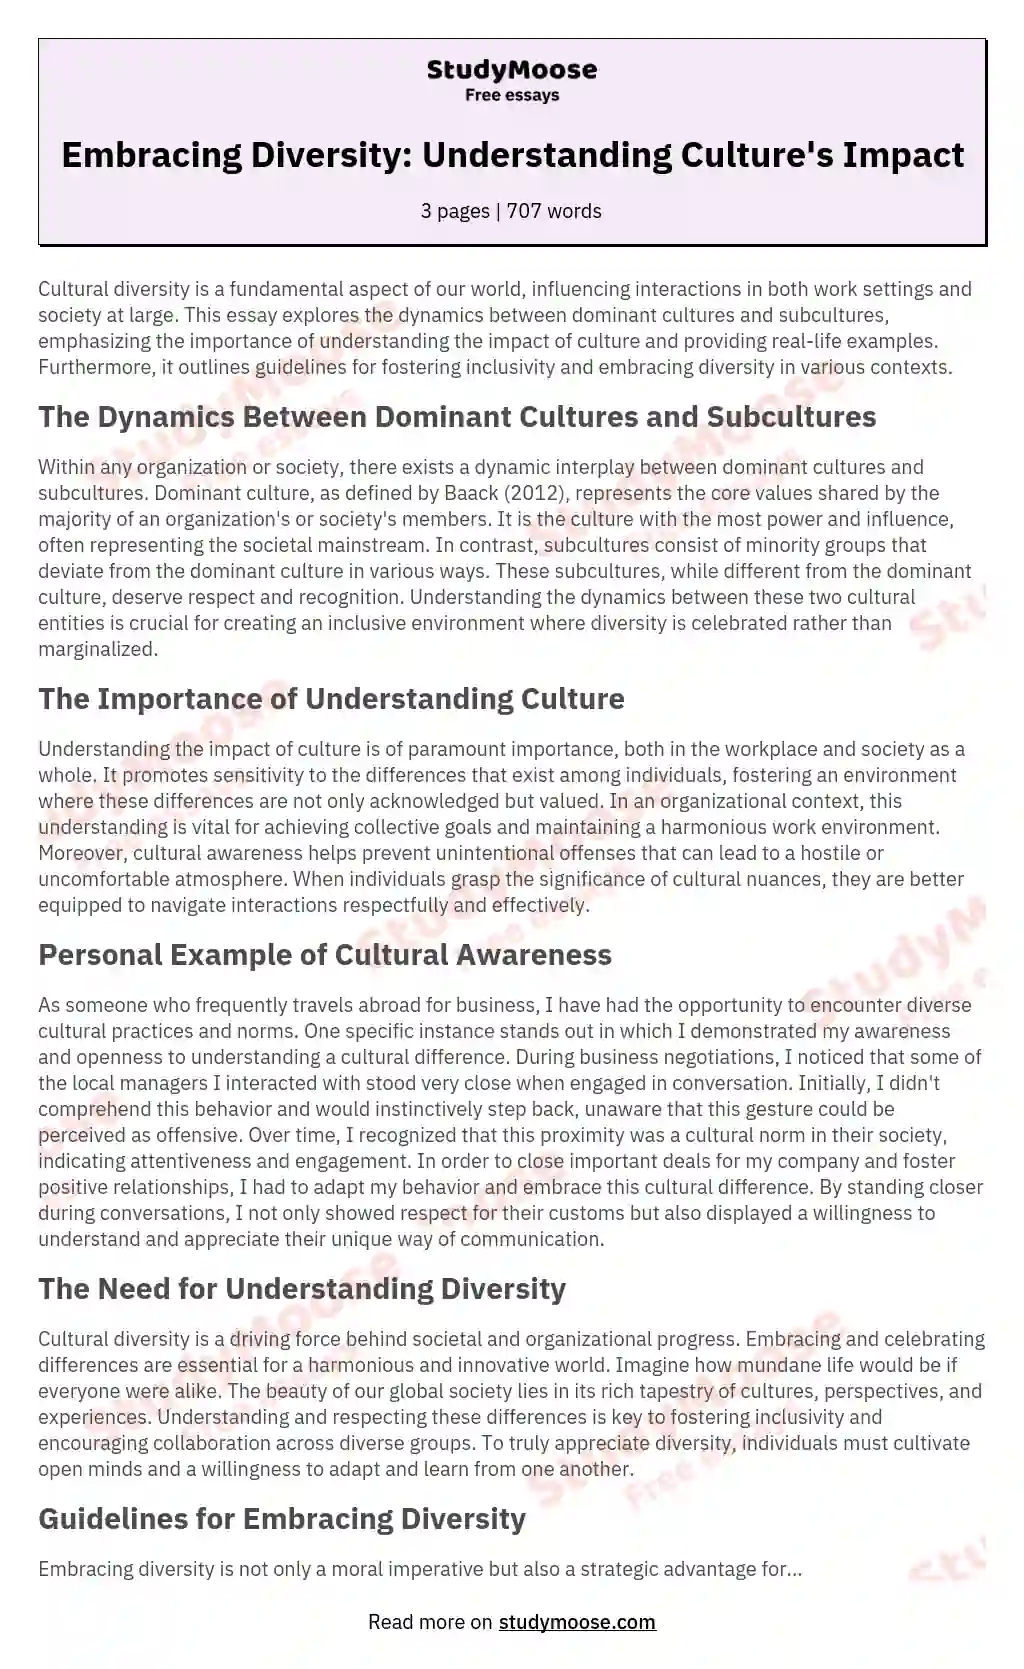 Embracing Diversity: Understanding Culture's Impact essay